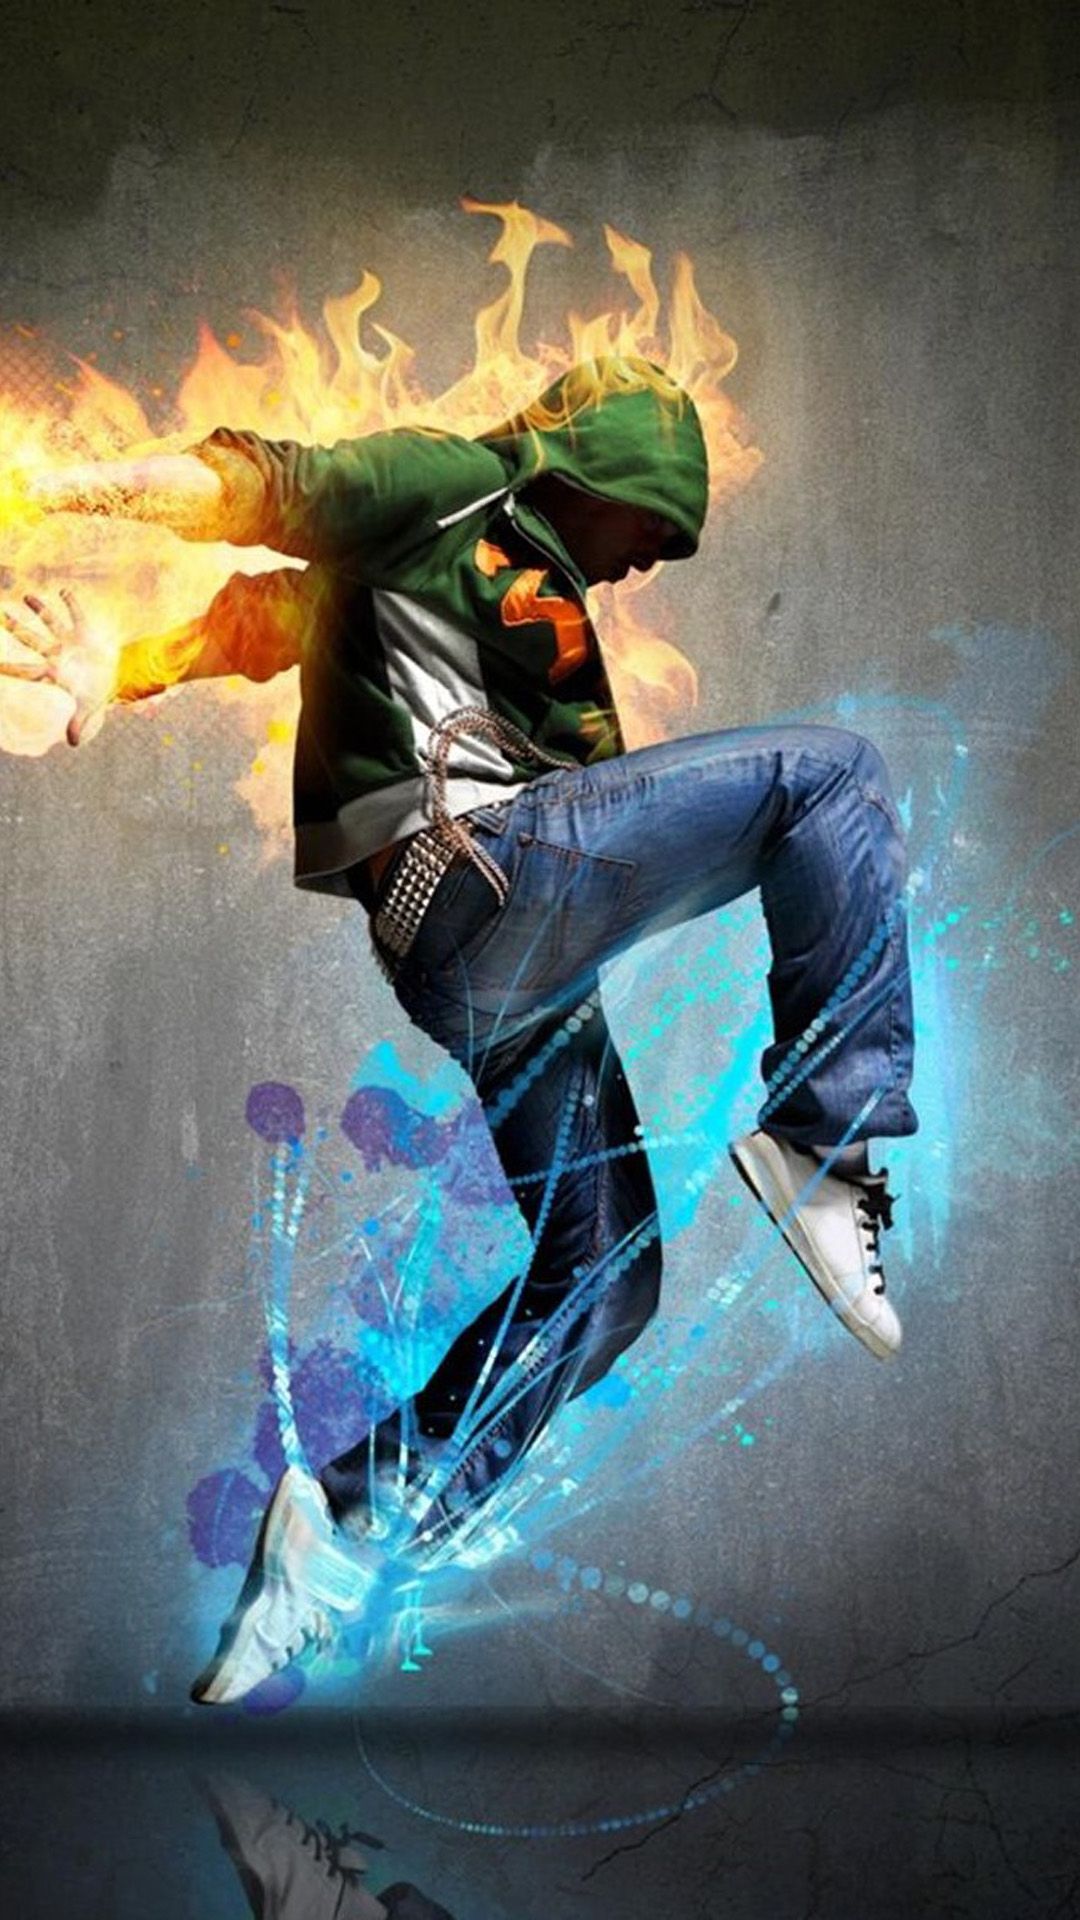 Fire Sport Dancer iPhone 8 Wallpaper. iPhone 5s wallpaper, Dance